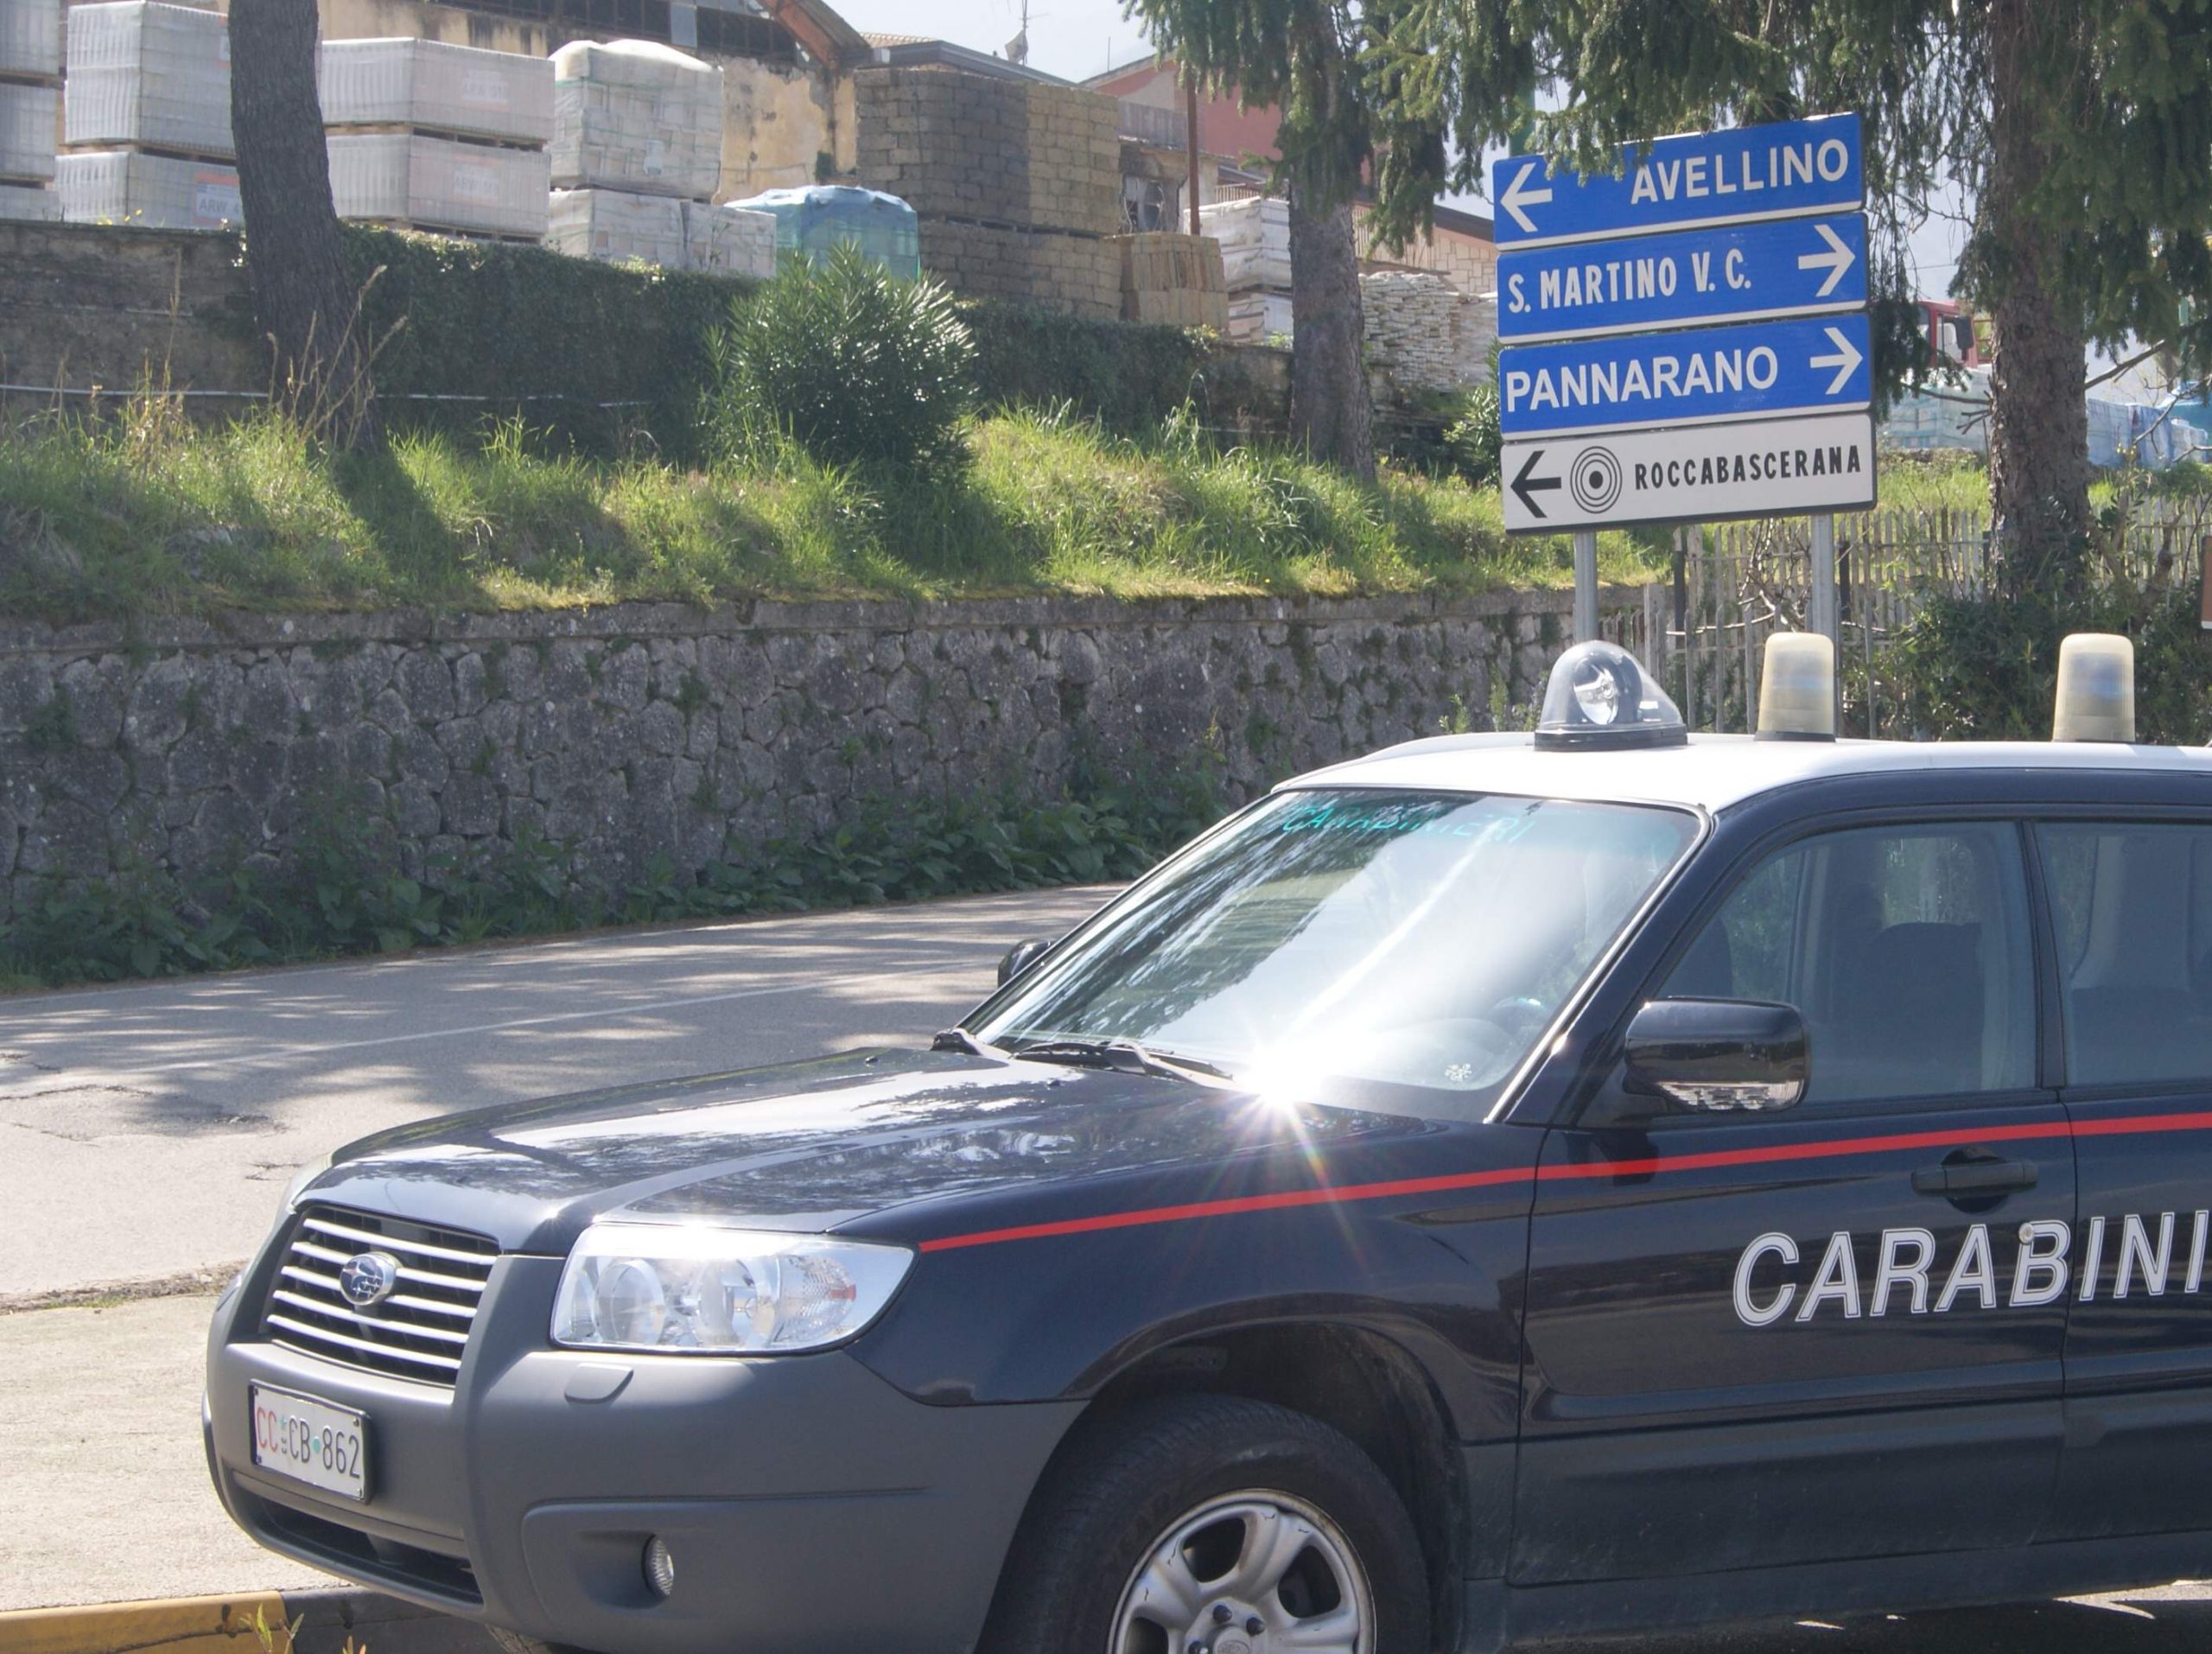 Roccabascerana| Sorpreso dai Carabinieri in possesso di cocaina, 40enne di Sant’Angelo a Scala denunciato per spaccio